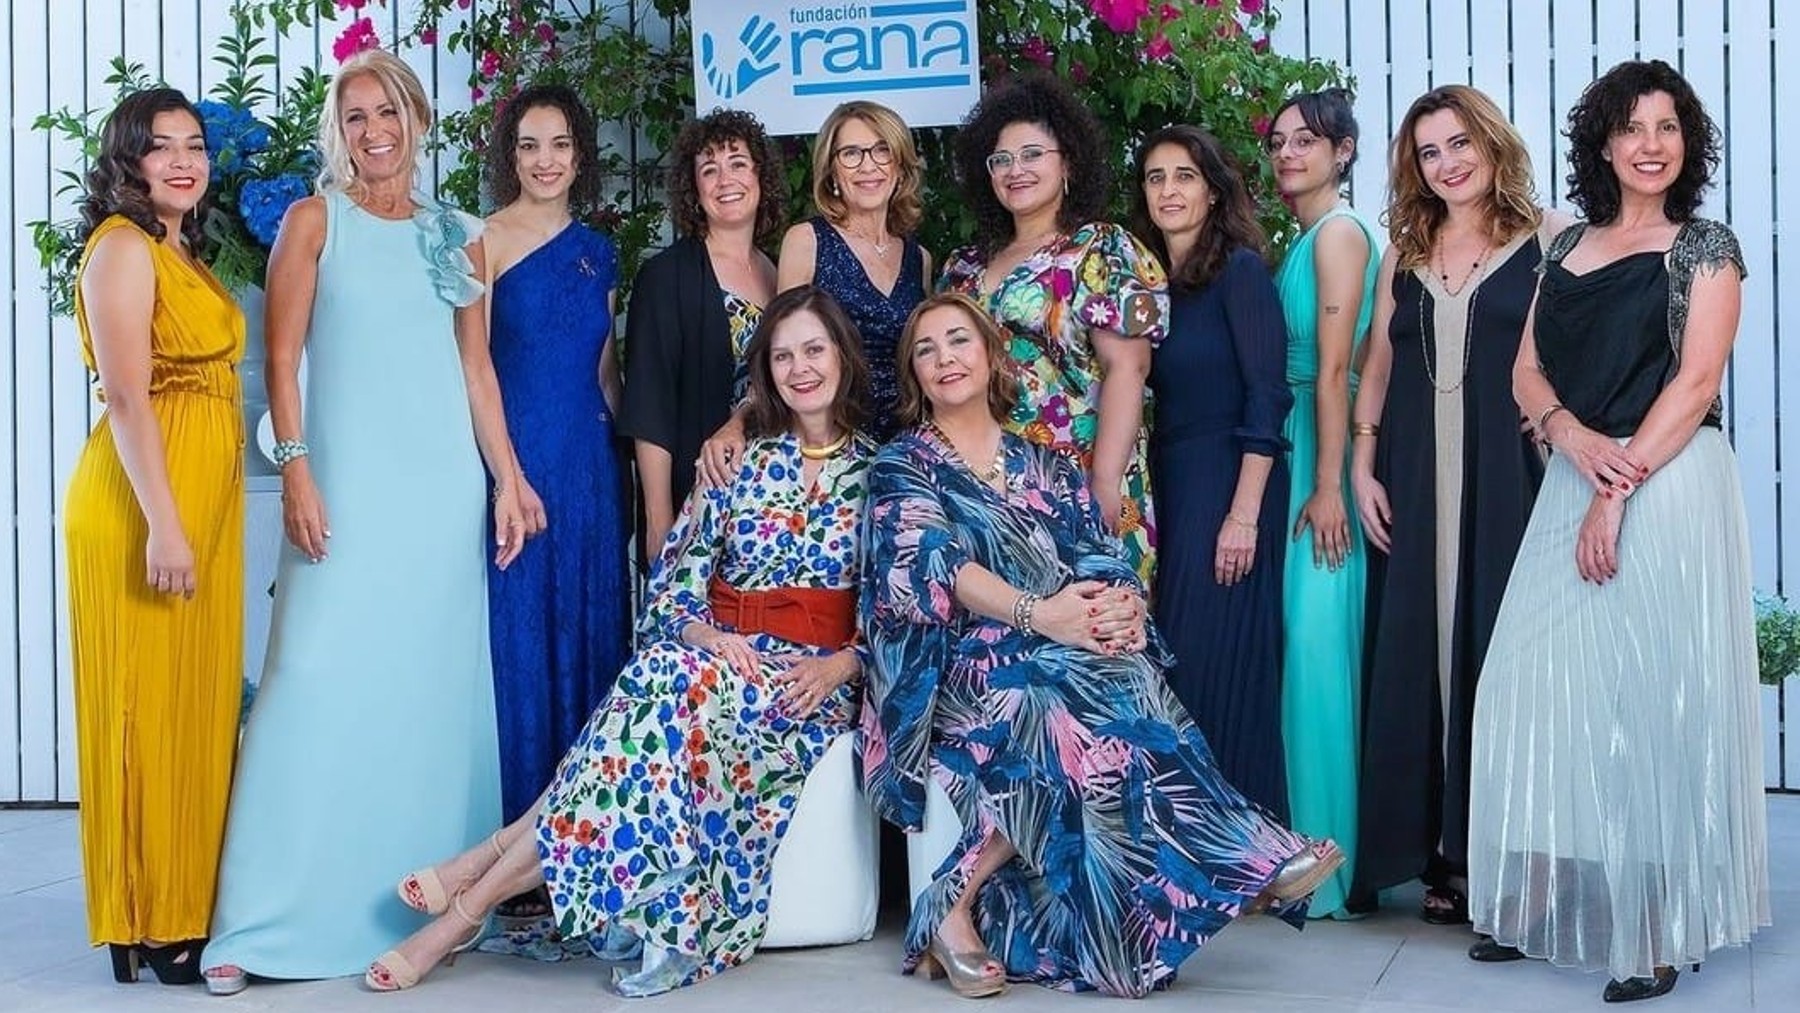 El equipo de la Fundación RANA posando durante una gala benéfica celebrada en mayo.